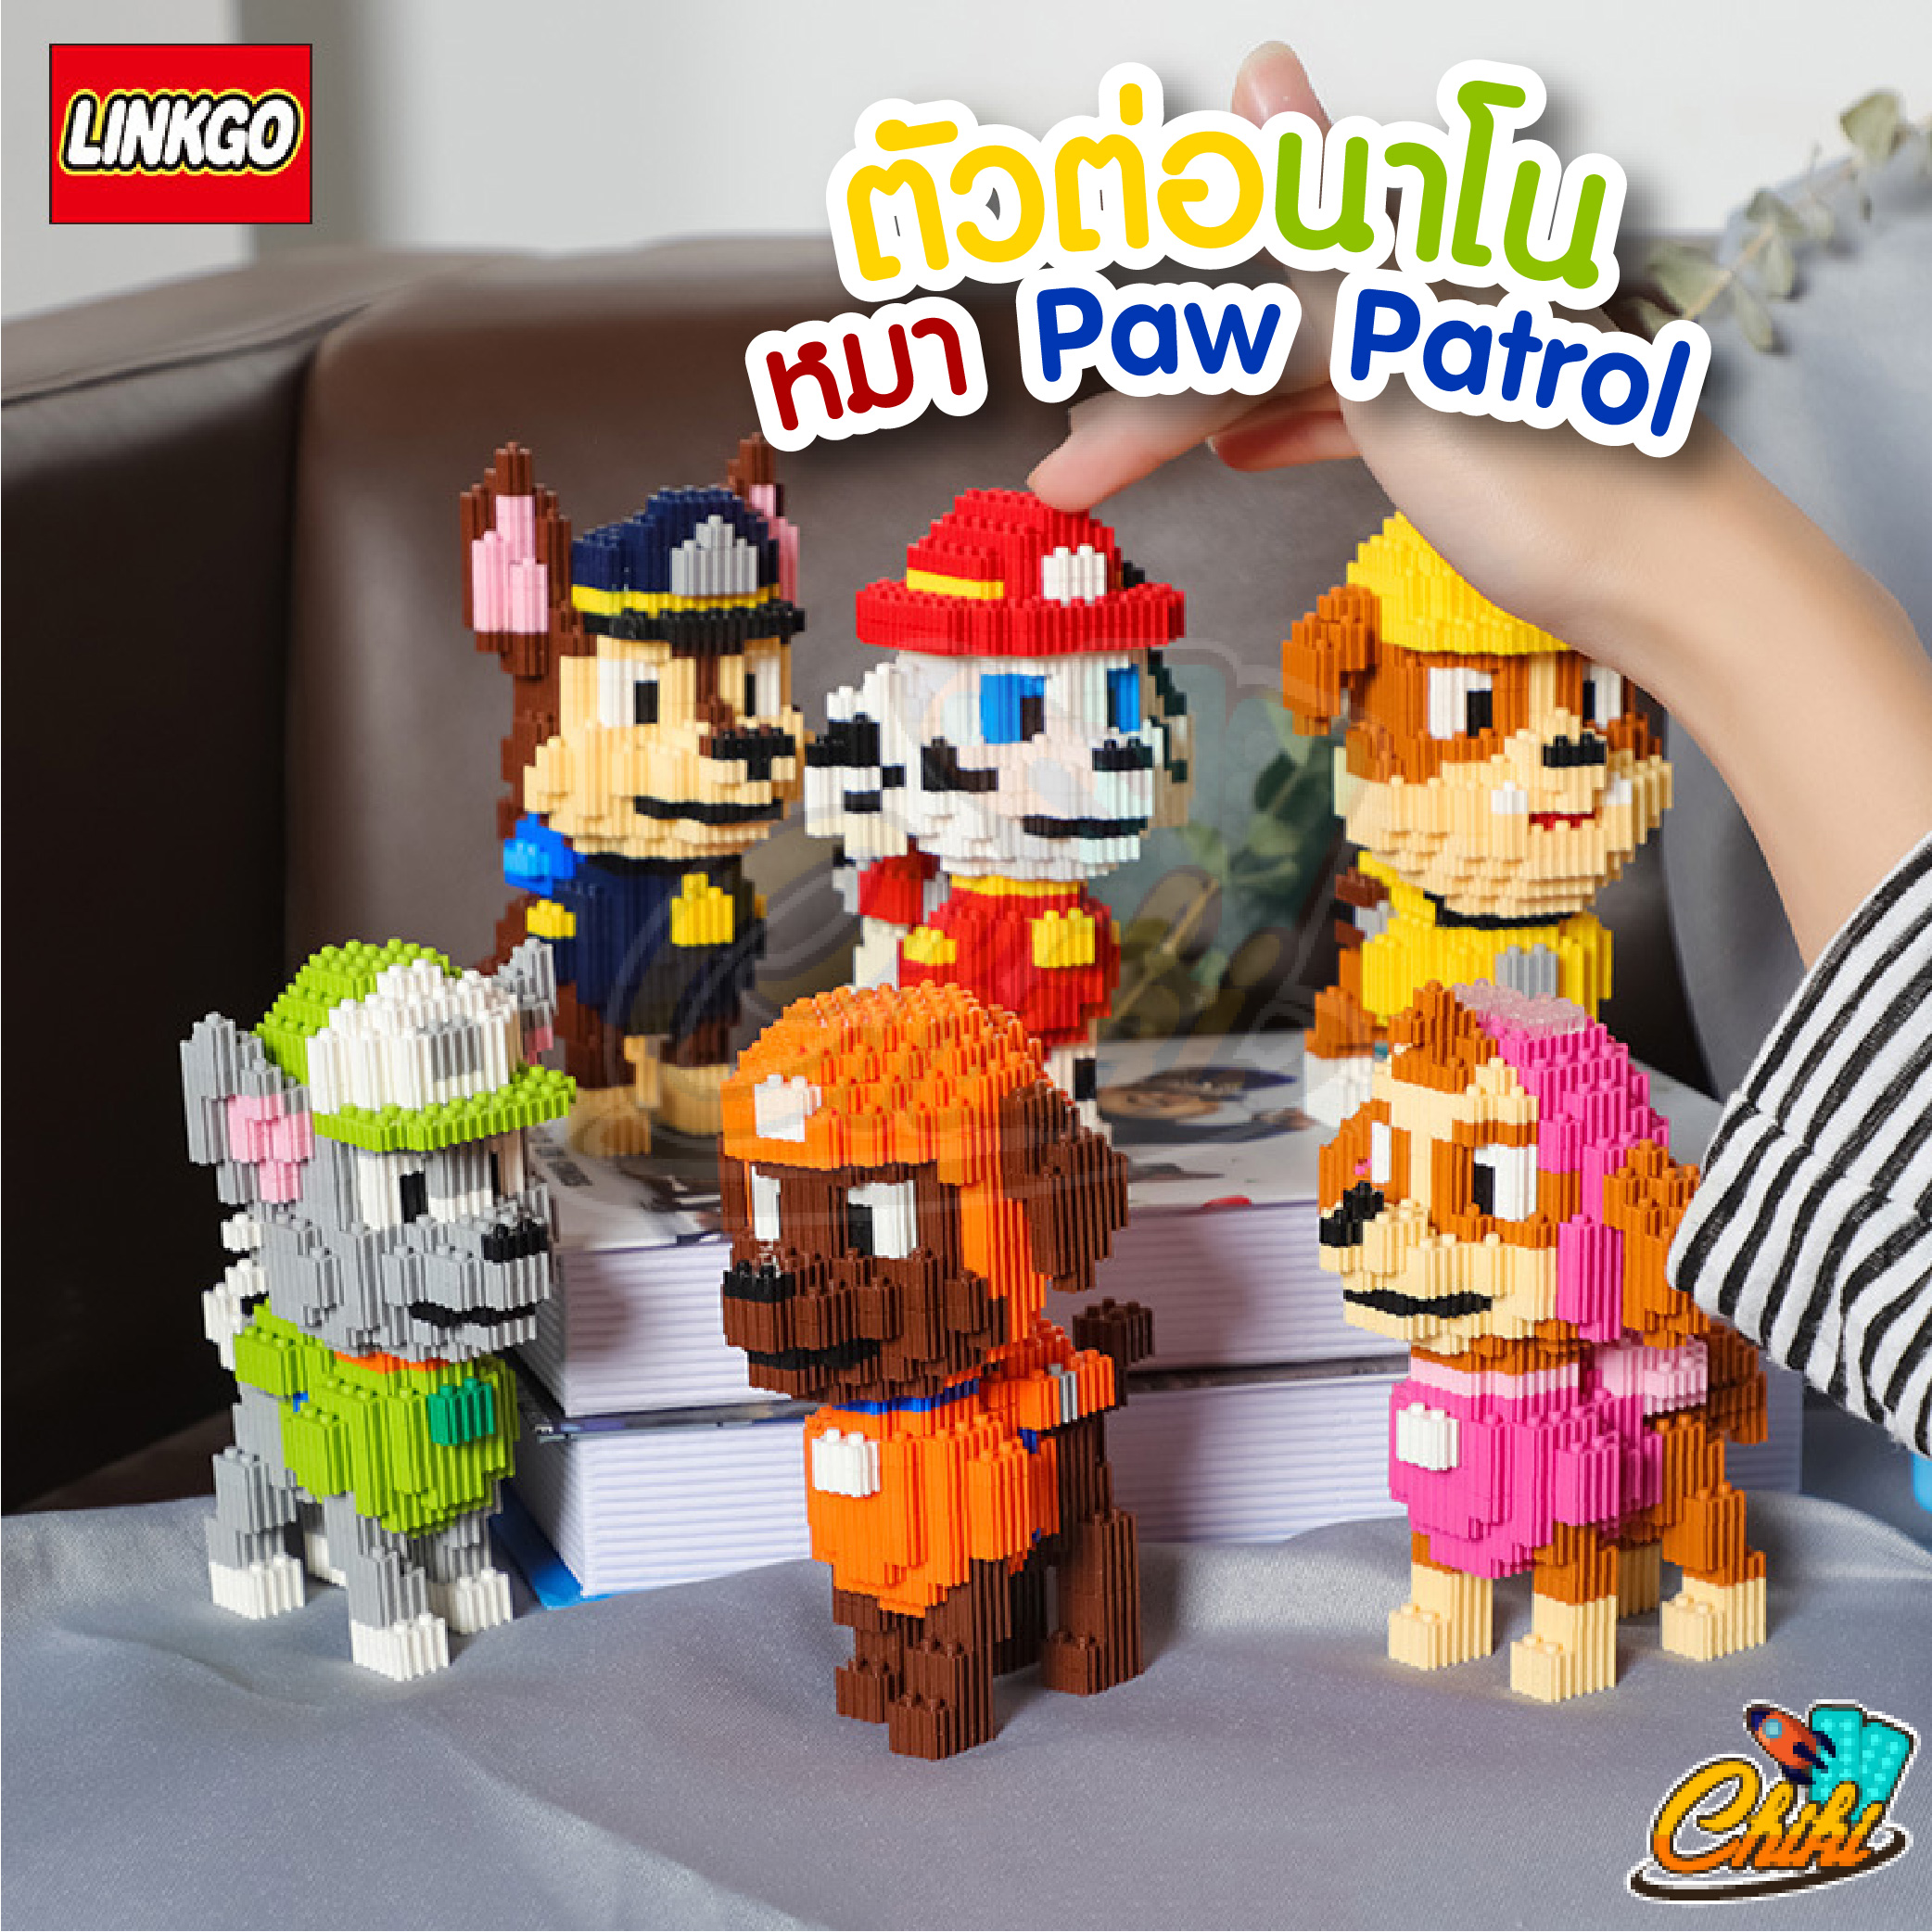 ตัวต่อเลโก้ นาโน การ์ตูนทีมหมา ขบวนการเจ้าตูบสี่ขา Nanoblock Paw Patrol Linkgo